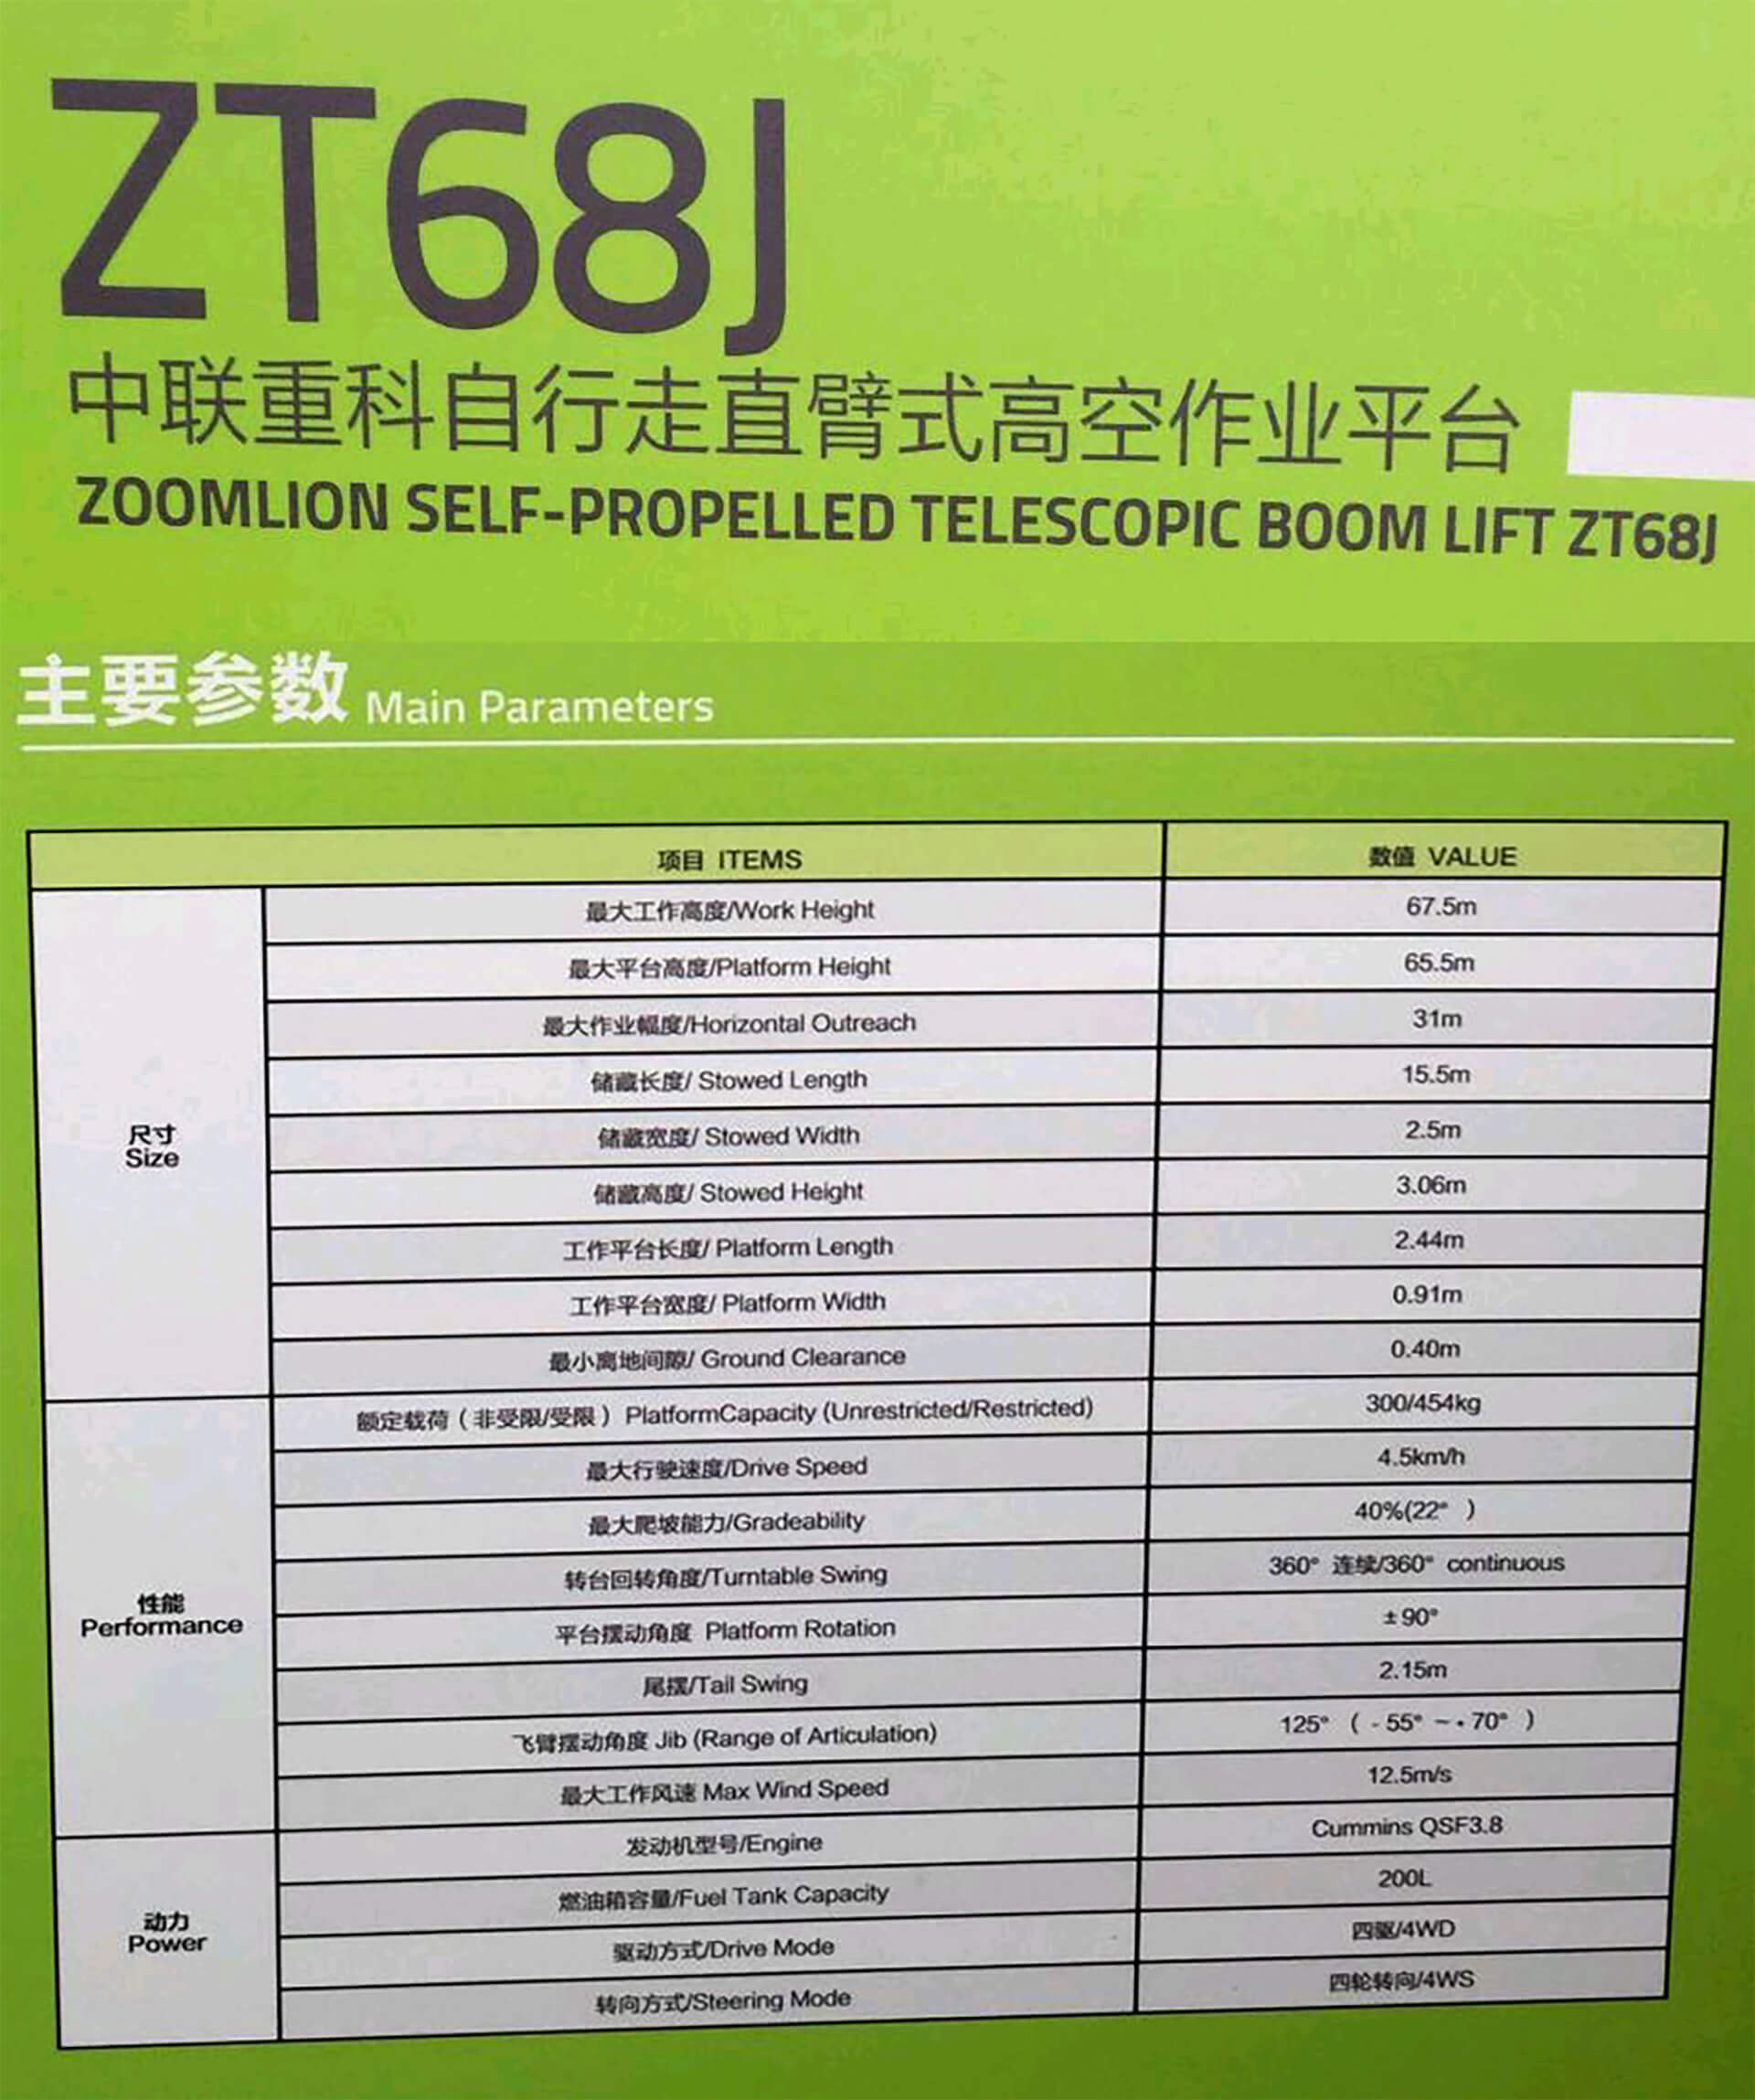 Bacpolska Podnośnik Wolno Bieżny Zt68j 67,5m Bauma China 2020 W Szanghaju Dane Techniczne